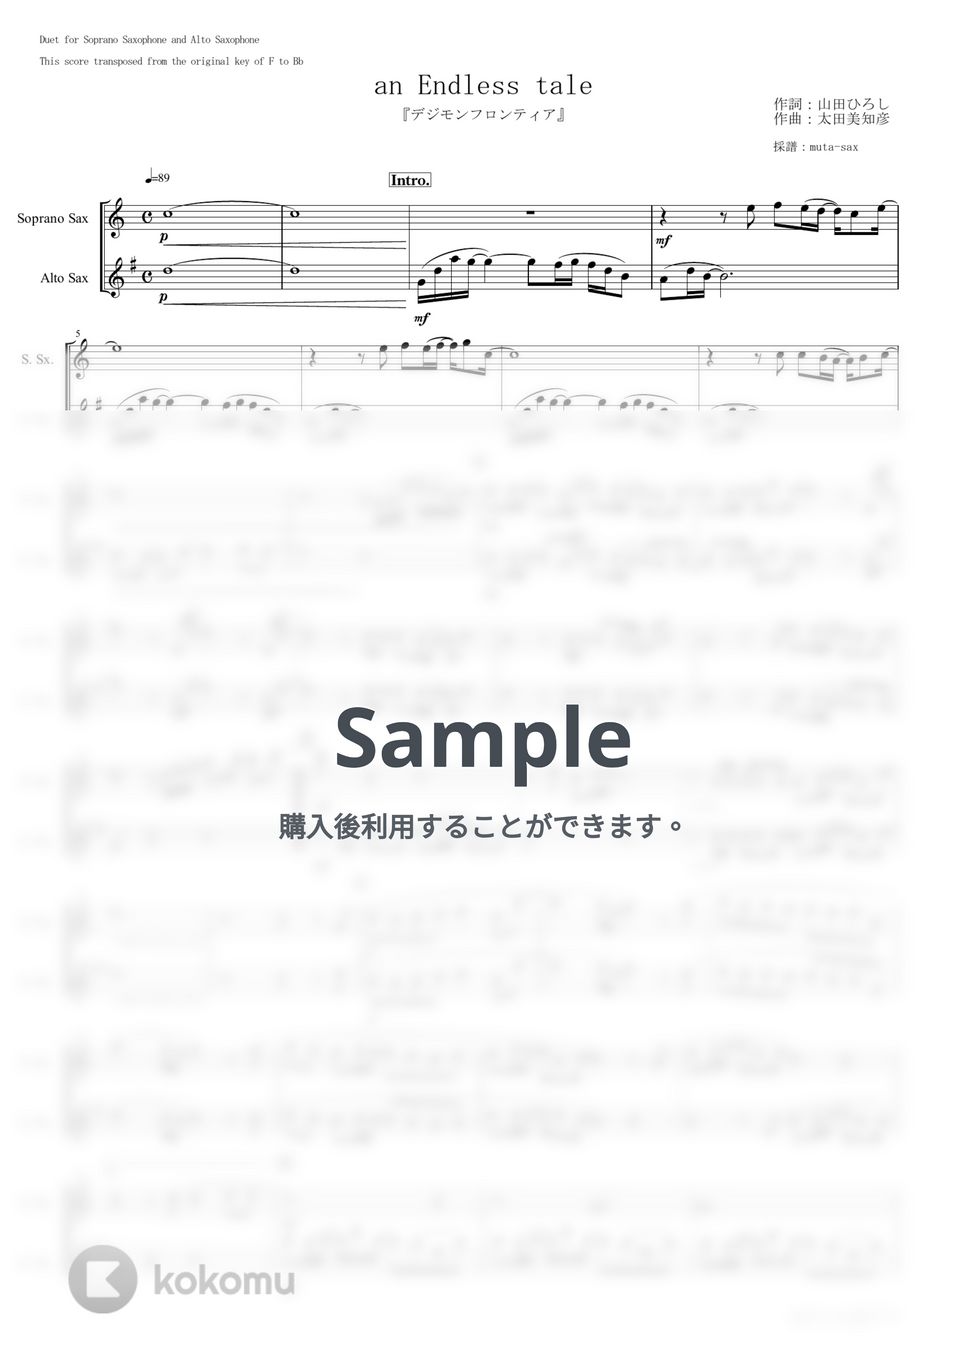 和田光司&AiM - an Endless tale (二重奏 / 『デジモンフロンティア』) by muta-sax